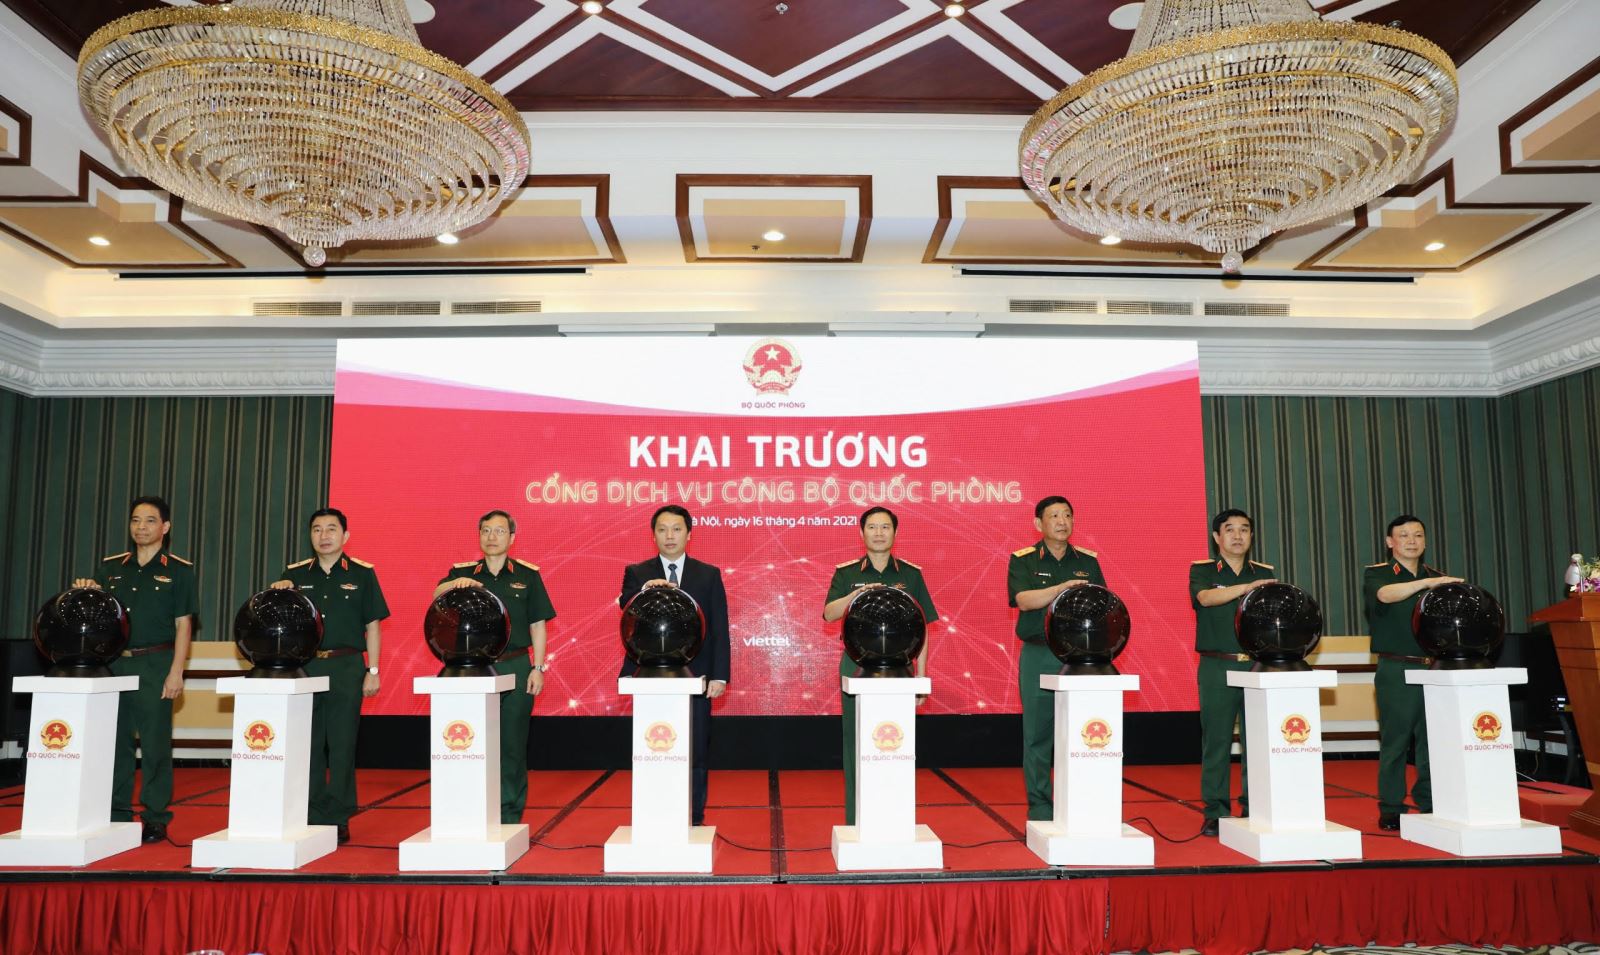 Thượng tướng Nguyễn Tân Cương cùng các đại biểu bấm nút khai trương Cổng dịch vụ công